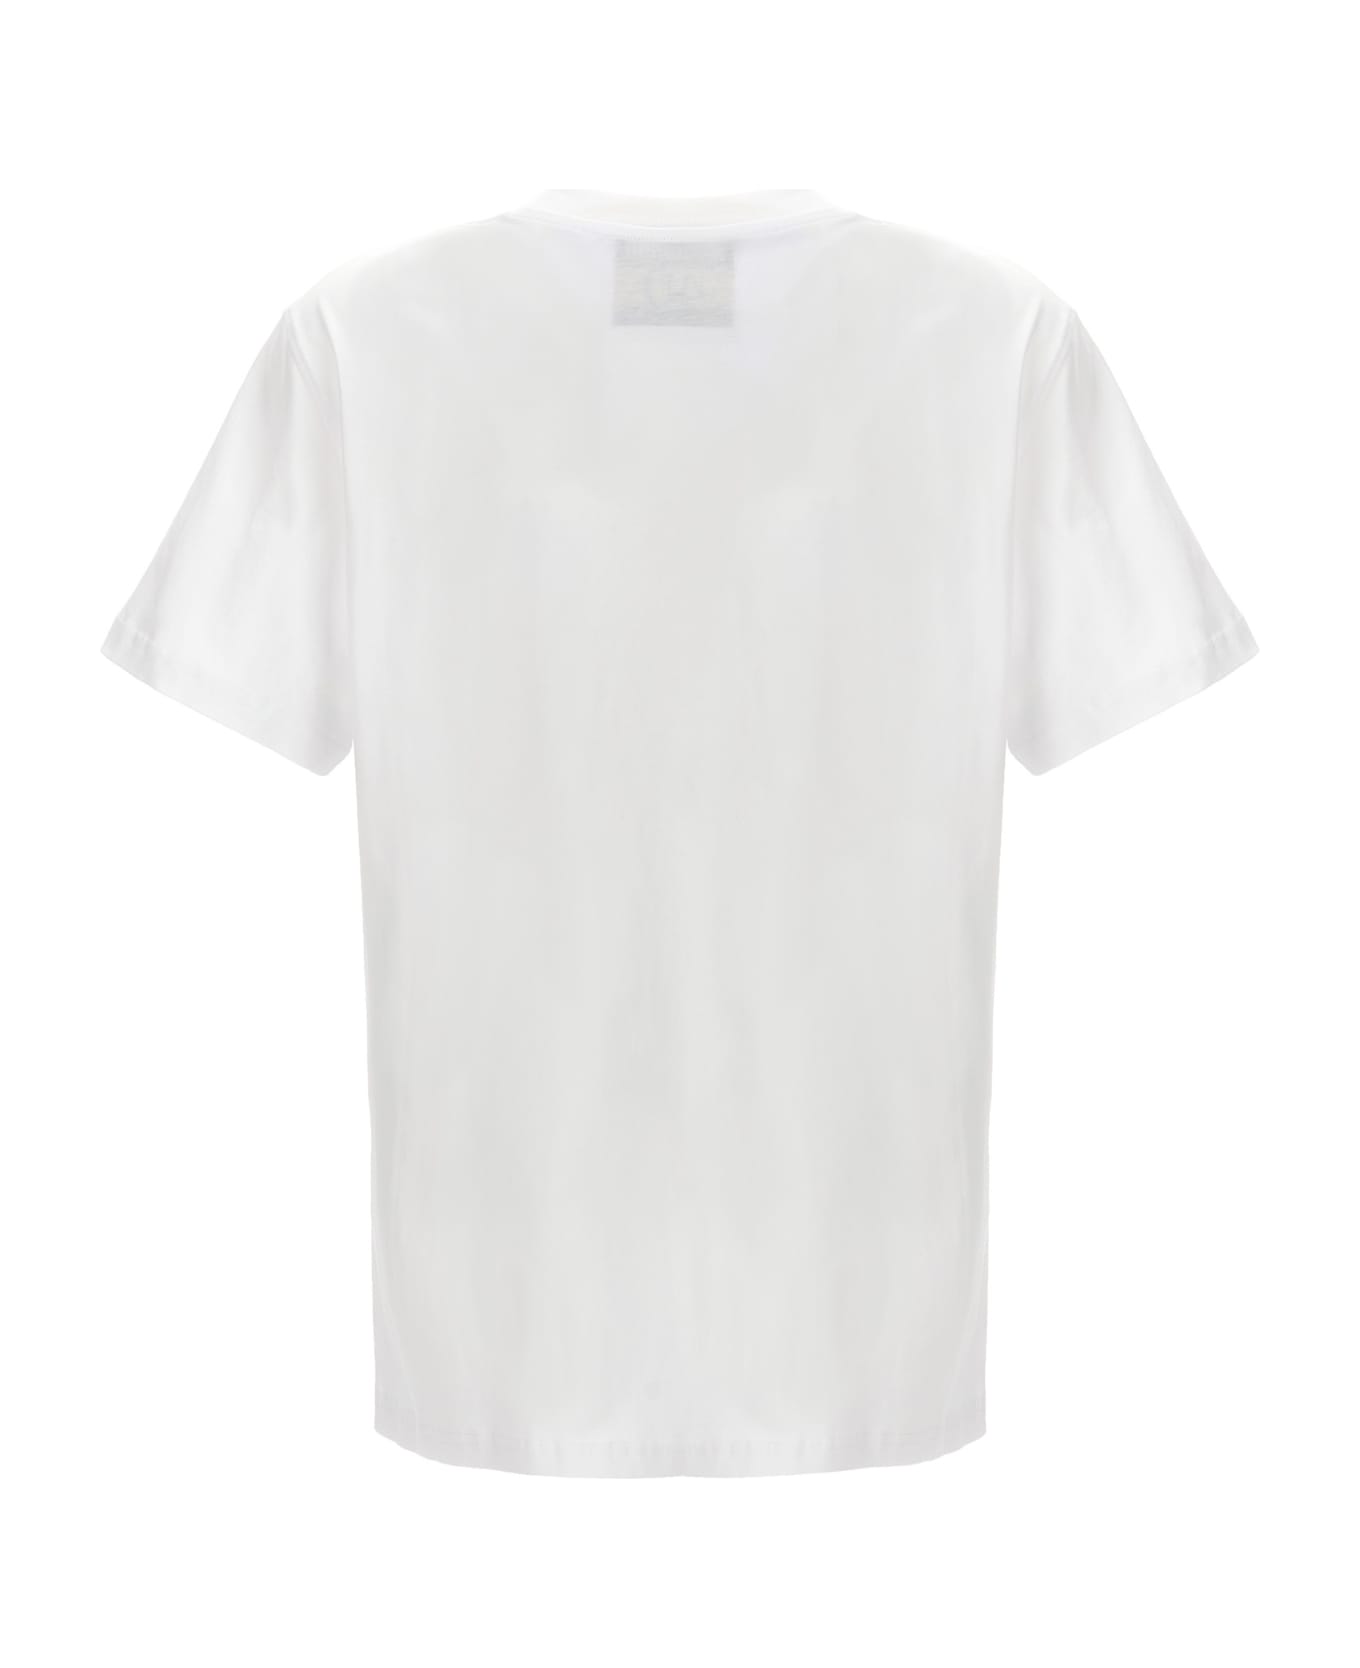 Moschino '40 Years Of Love' T-shirt - White